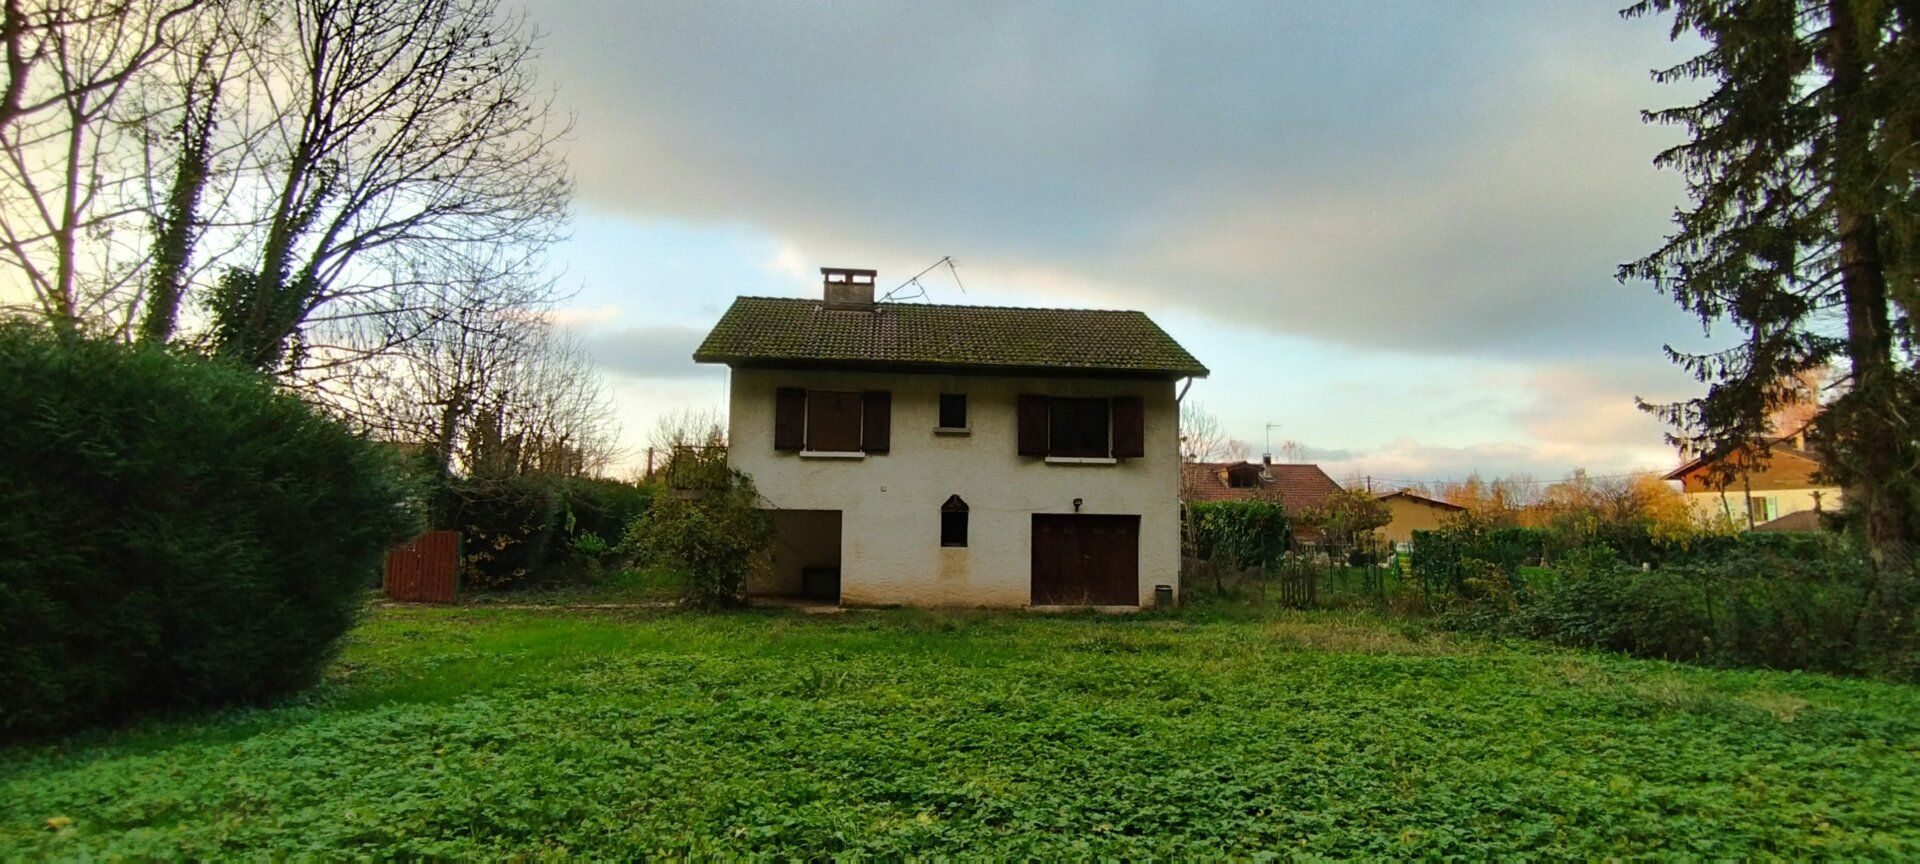 Maison à vendre 4 90m2 à Saint-Quentin-sur-Isère vignette-10